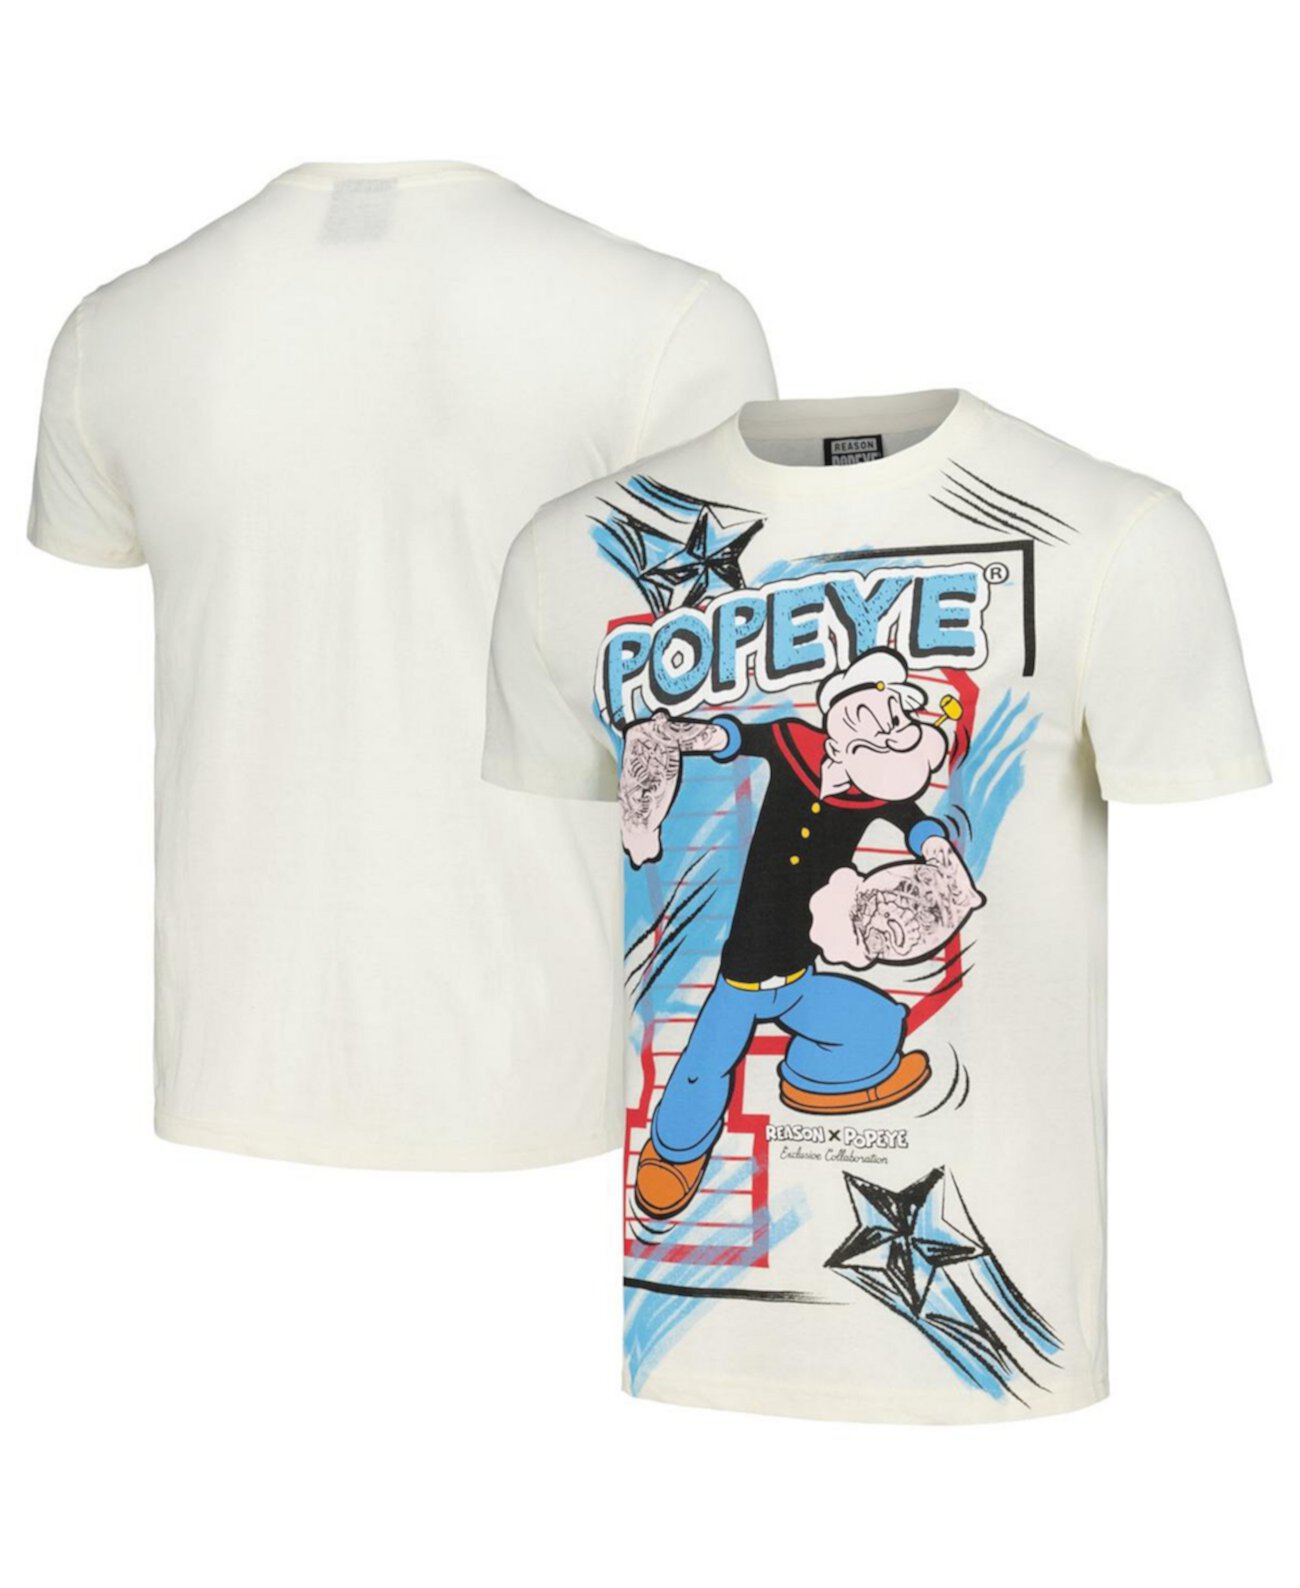 Men's and Women's Cream Popeye Retro T-Shirt Reason